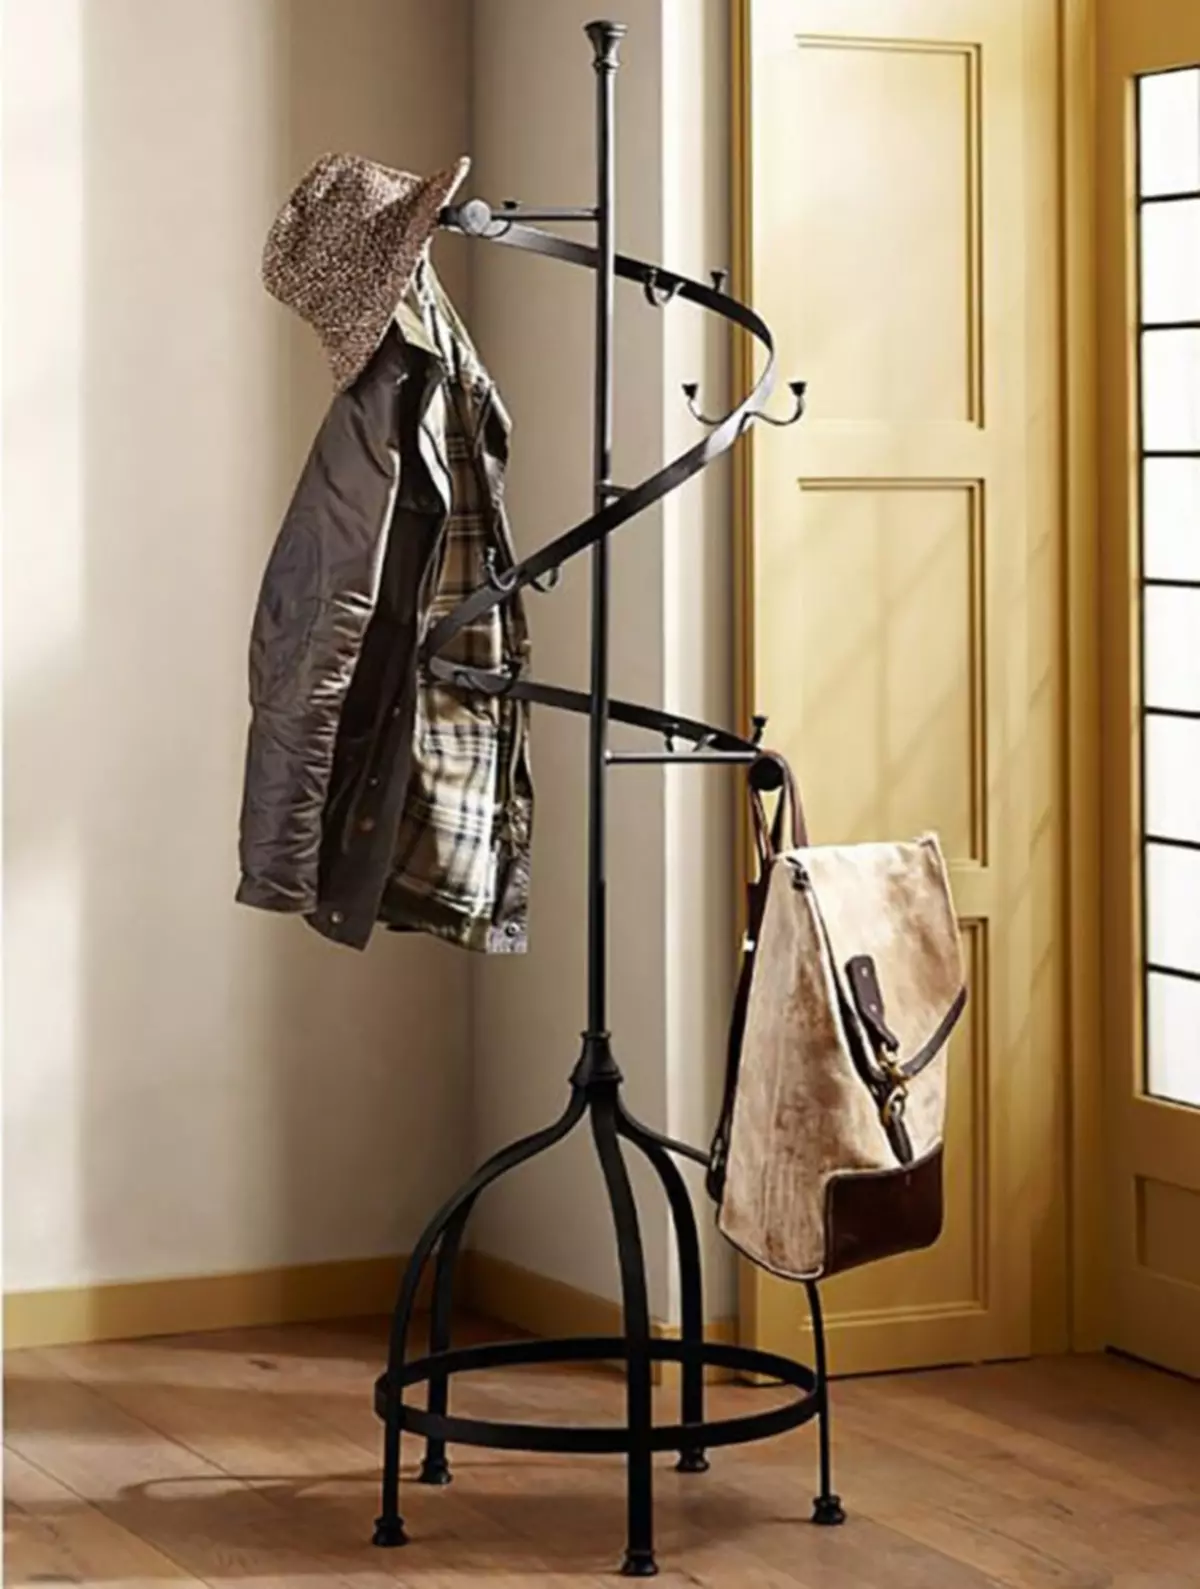 Móc treo ngoài trời ở hành lang: Chọn móc treo bằng gỗ và kim loại cho áo khoác ngoài trong hành lang, treo treo với giày và những người khác 9292_47